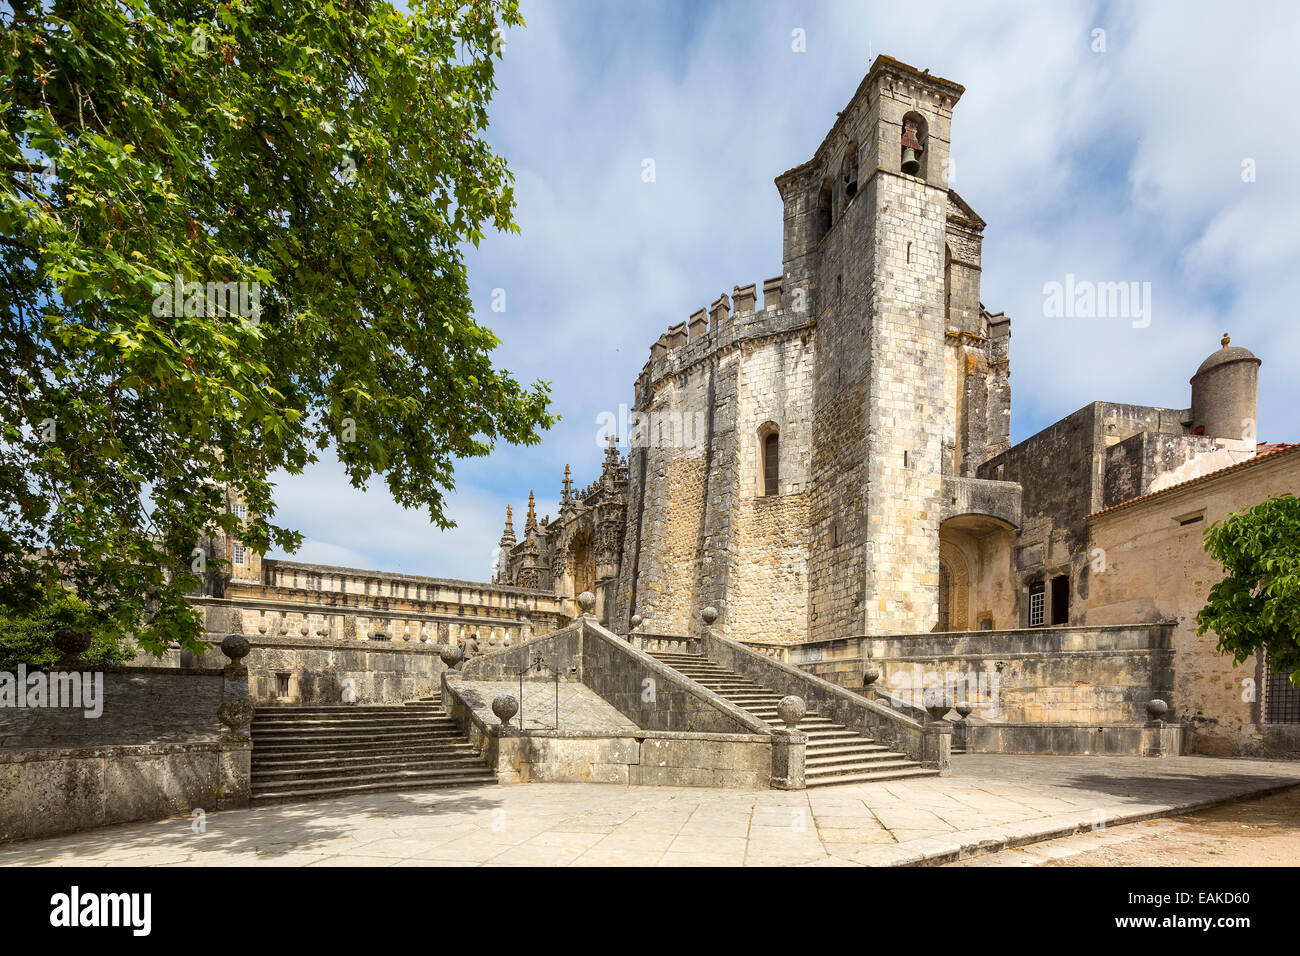 Convento de Cristo, Château des Templiers, Site du patrimoine culturel mondial de l'UNESCO, Tomar, Portugal, District de Santarém Banque D'Images